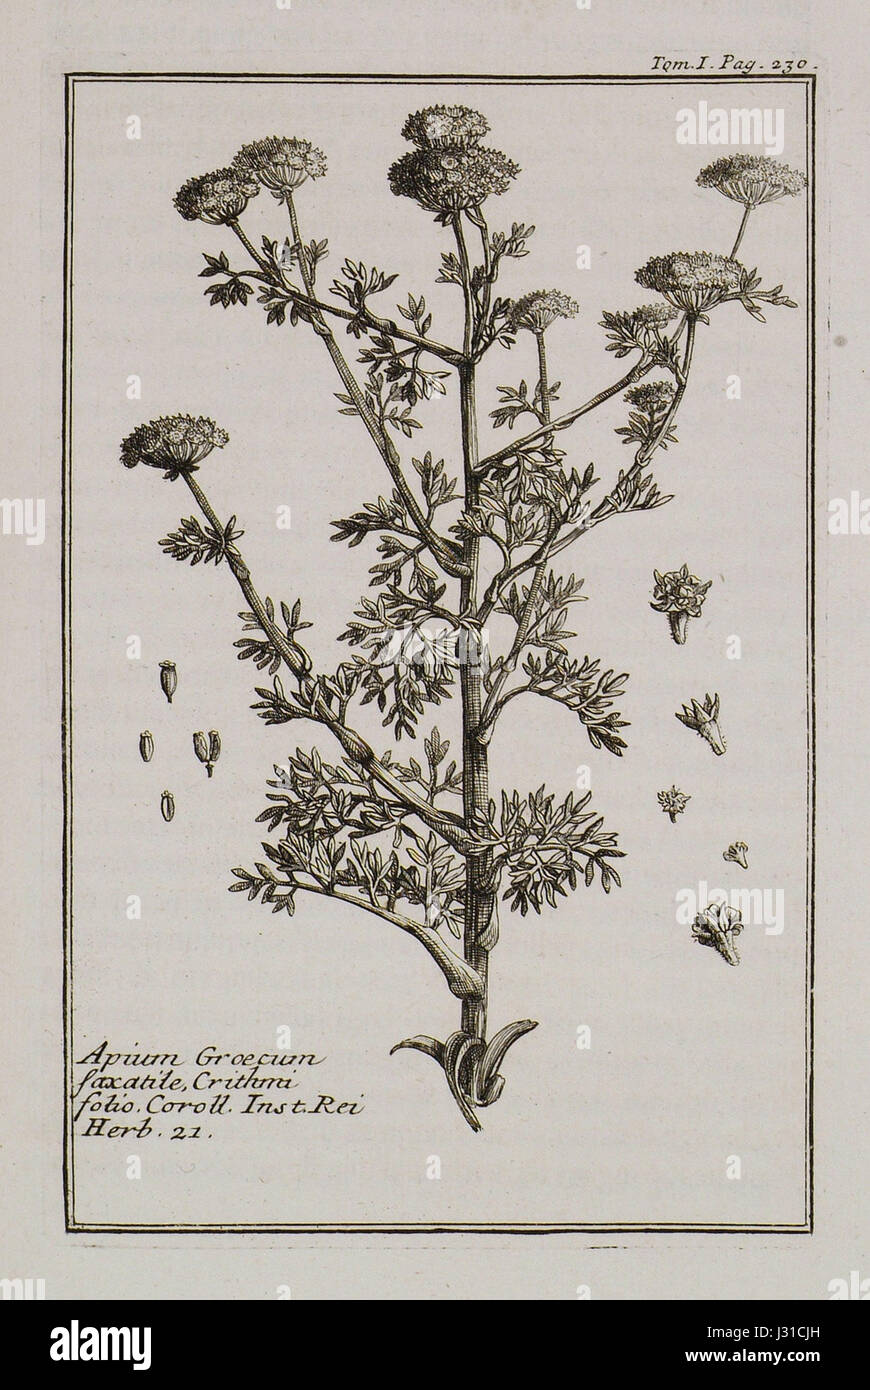 Apium Graecum saxatile, Crithmi folio Coroll Inst Rei herb 21 - Tournefort Joseph Pitton De - 1717 Stock Photo